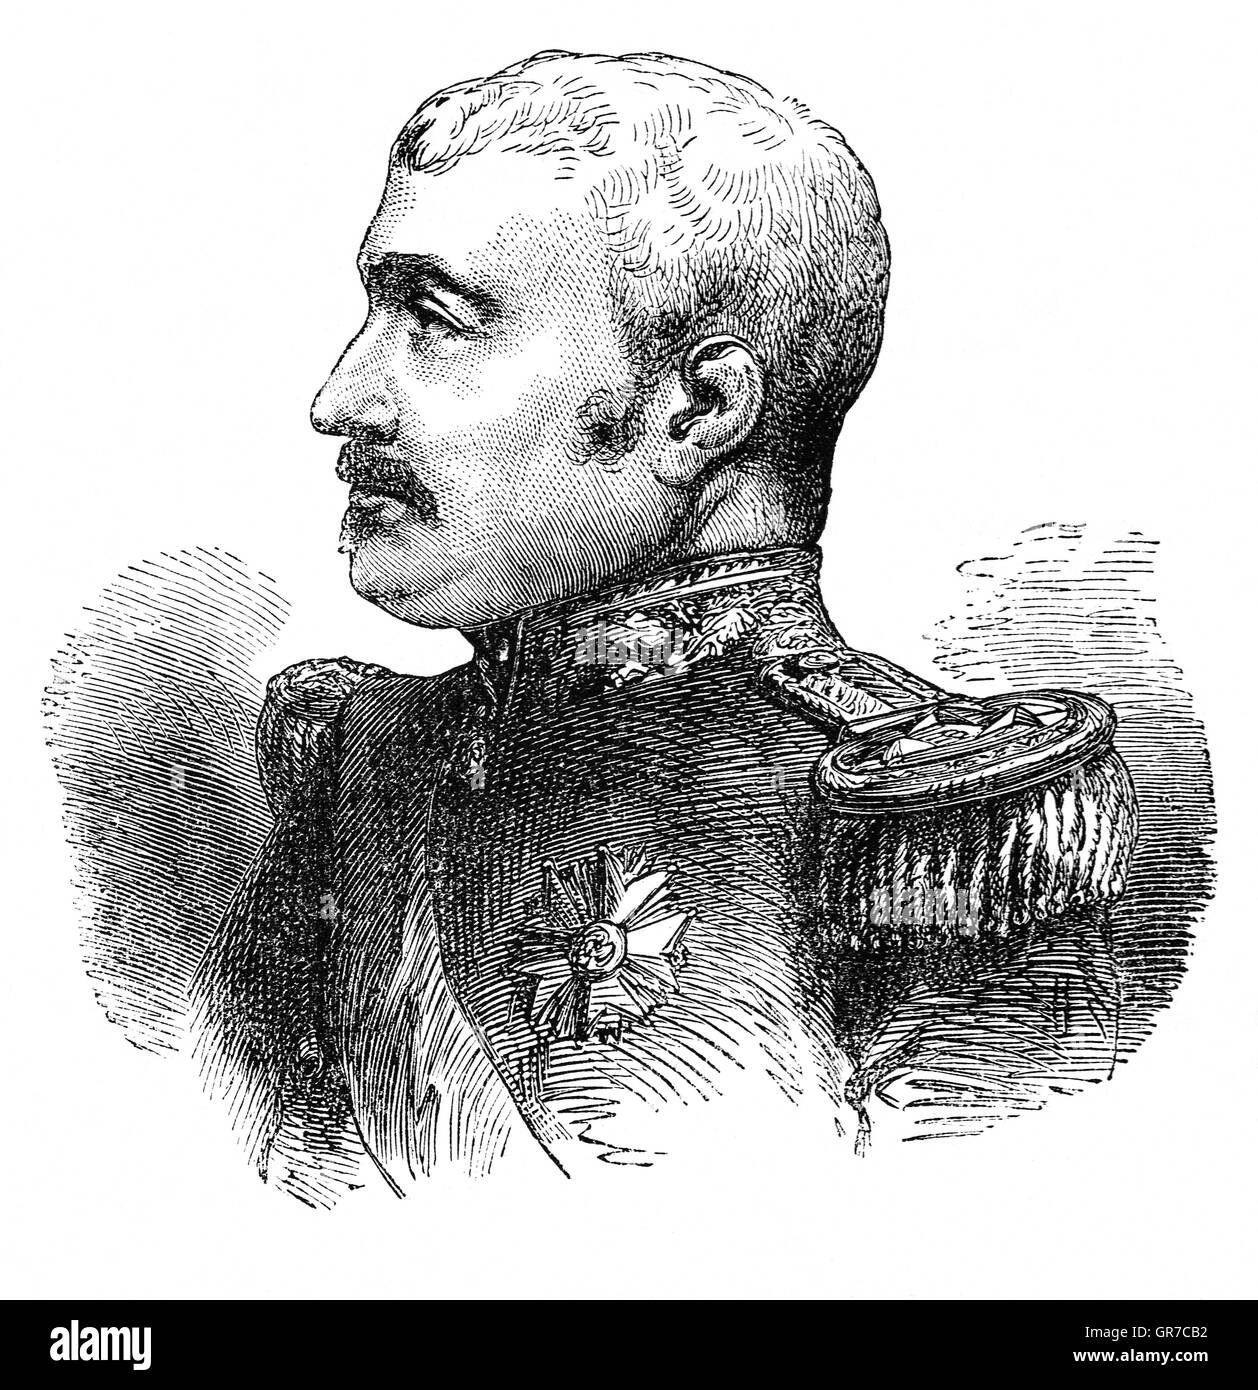 Aimable Jean Jacques Pélissier, 1. Duc de Malakoff (1794 –1864), war ein Marschall von Frankreich.   1855 wurde er Marschall Canrobert als Oberbefehlshaber der französischen Truppen vor der Belagerung von Sewastopol, einen Befehl von unerbittlichen Druck der Feind und unabänderliche Bestimmung zur Durchführung der Kampagne ohne Einmischung von Paris geprägt. Seine Beharrlichkeit wurde in der Erstürmung des Turms Malakoff endete die Belagerung von Sewastopol, Krönung der anglo-französischen Krimkrieg gegen Russland mit Sieg mit Erfolg gekrönt. Stockfoto